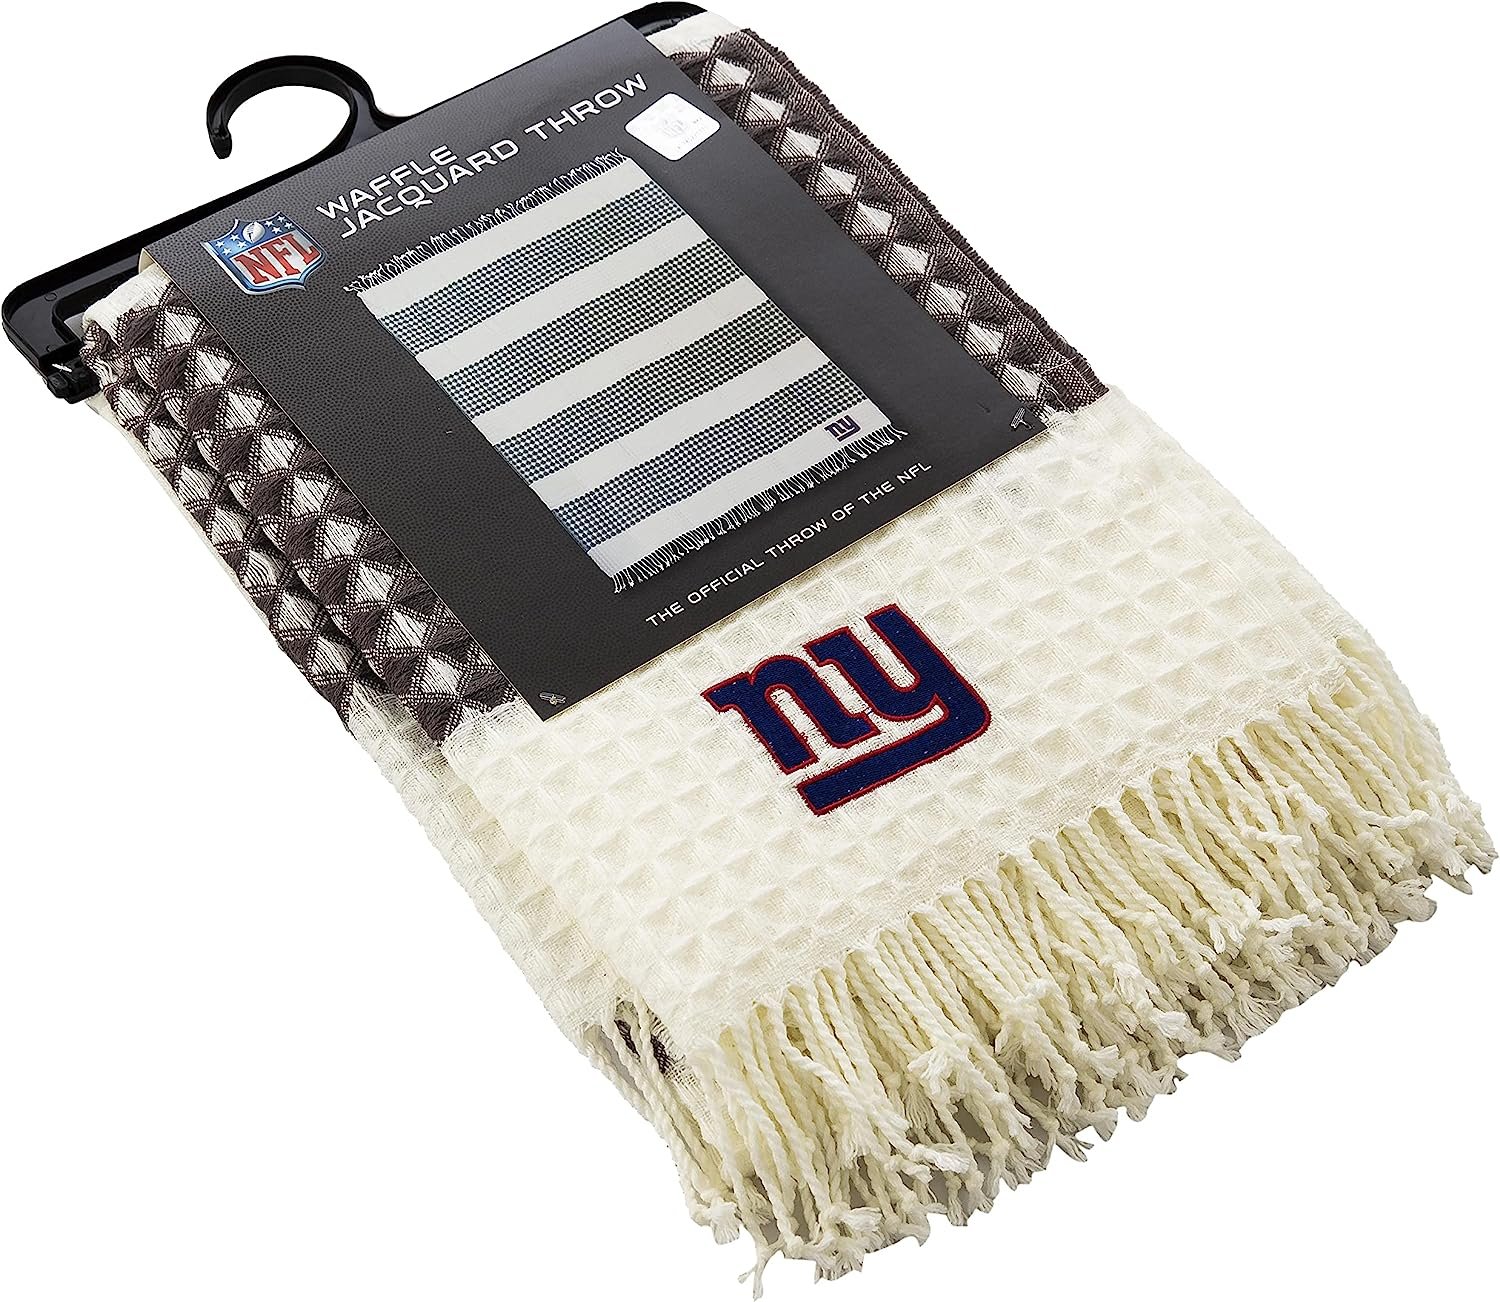 New York Giants Throw Blanket Waffle Weave Jacquard, 50x60 Inch, Unisex-Adult, 100% Acrylic